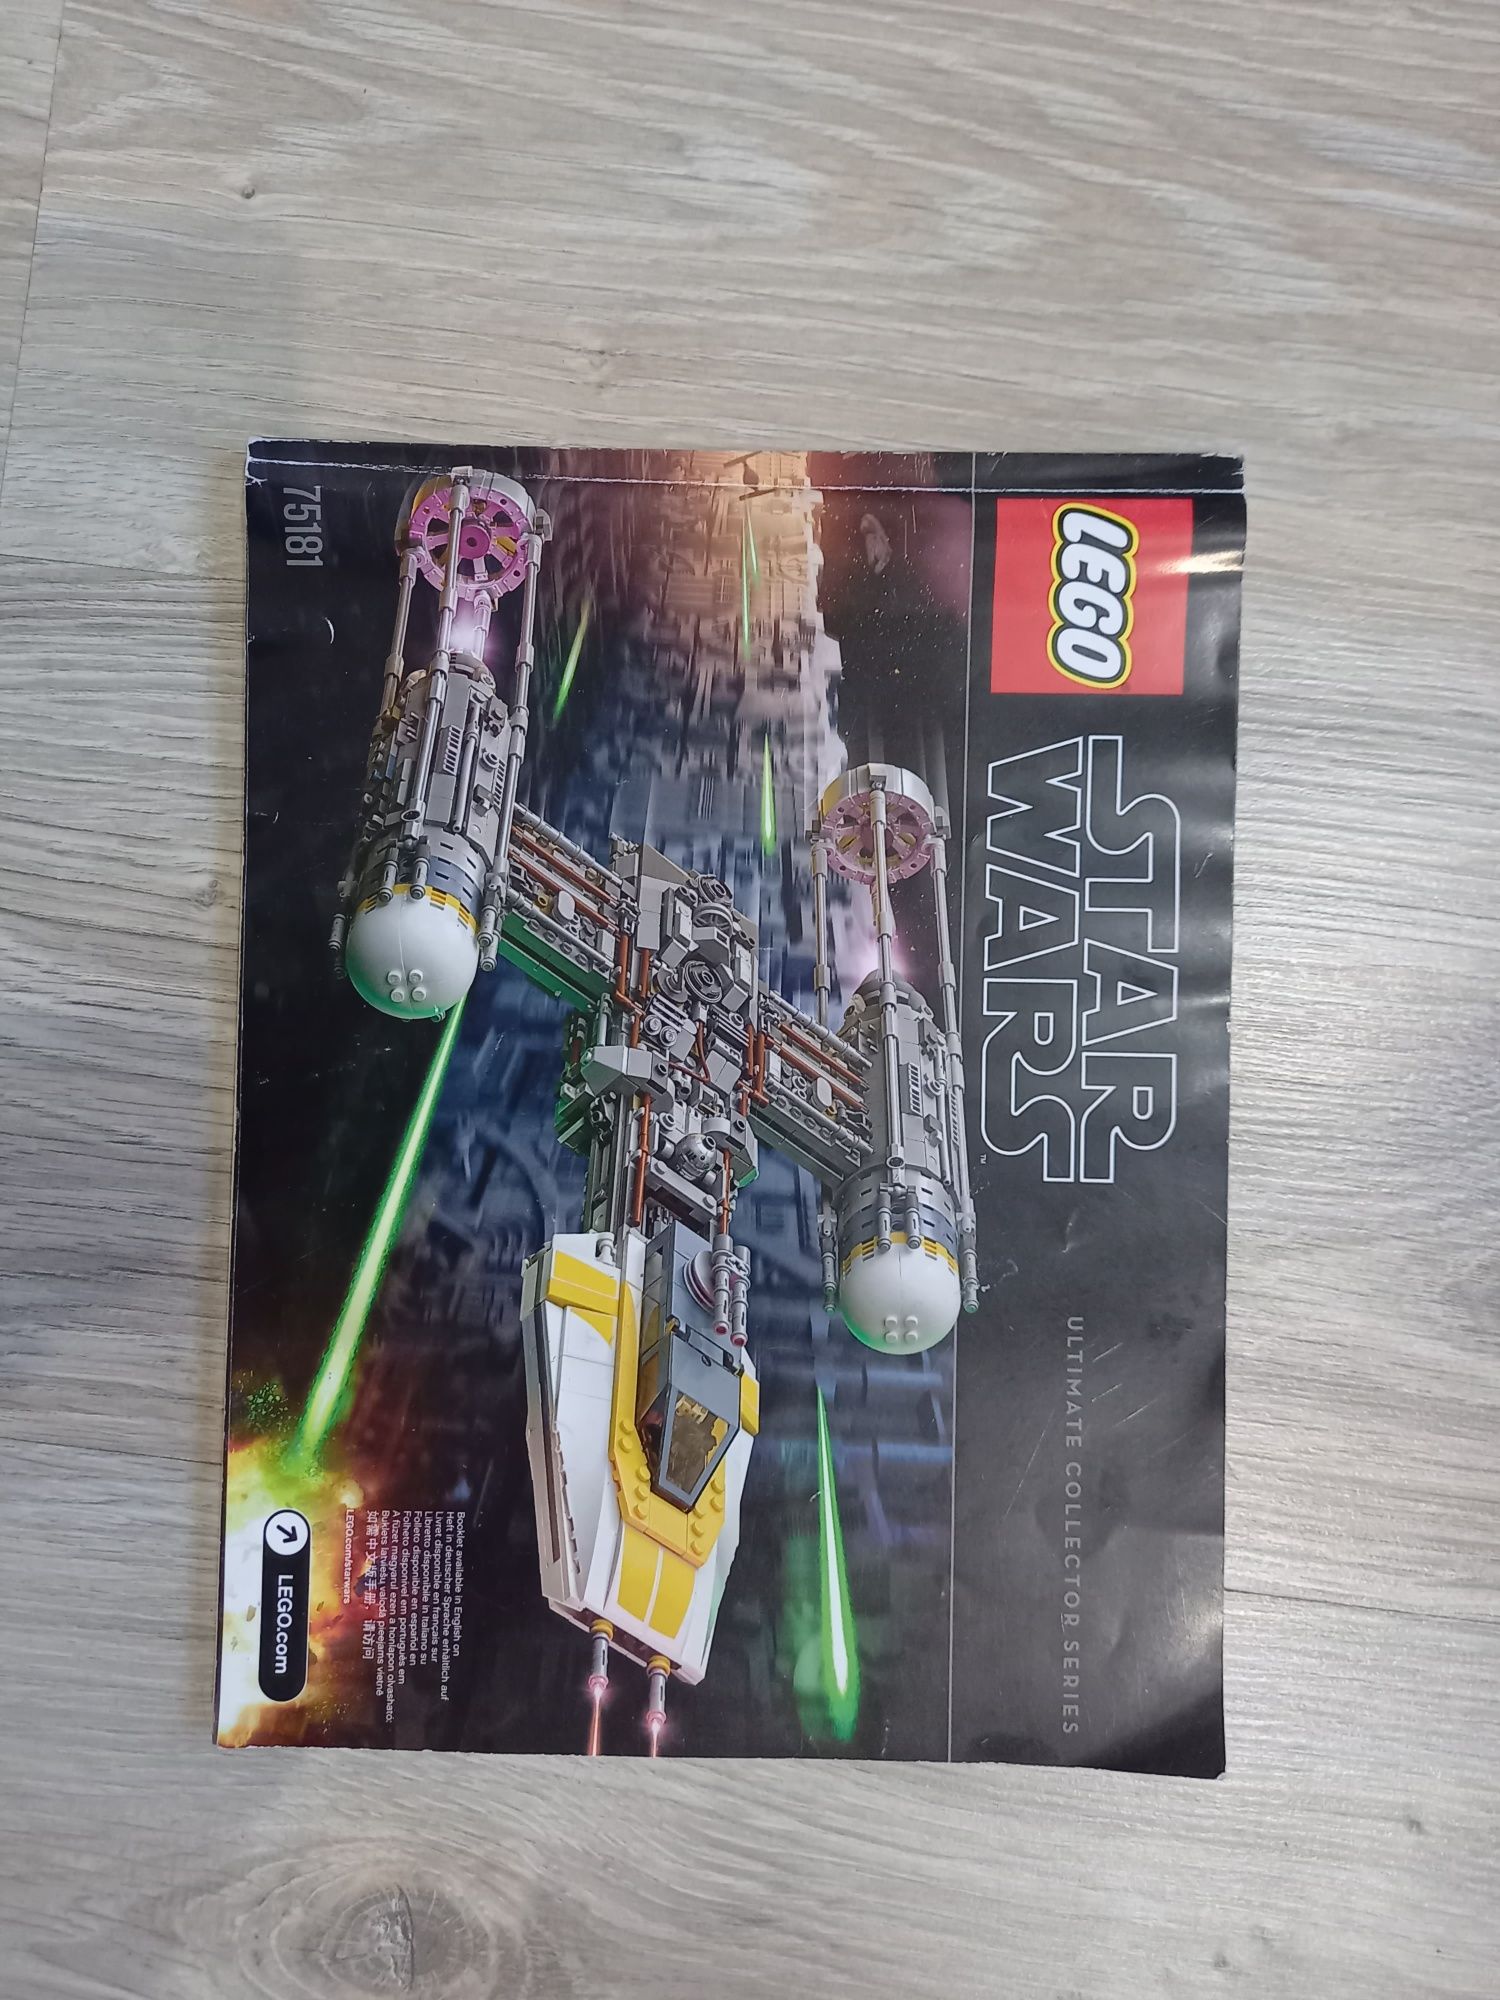 Lego Star Wars 75181 Y-Wing